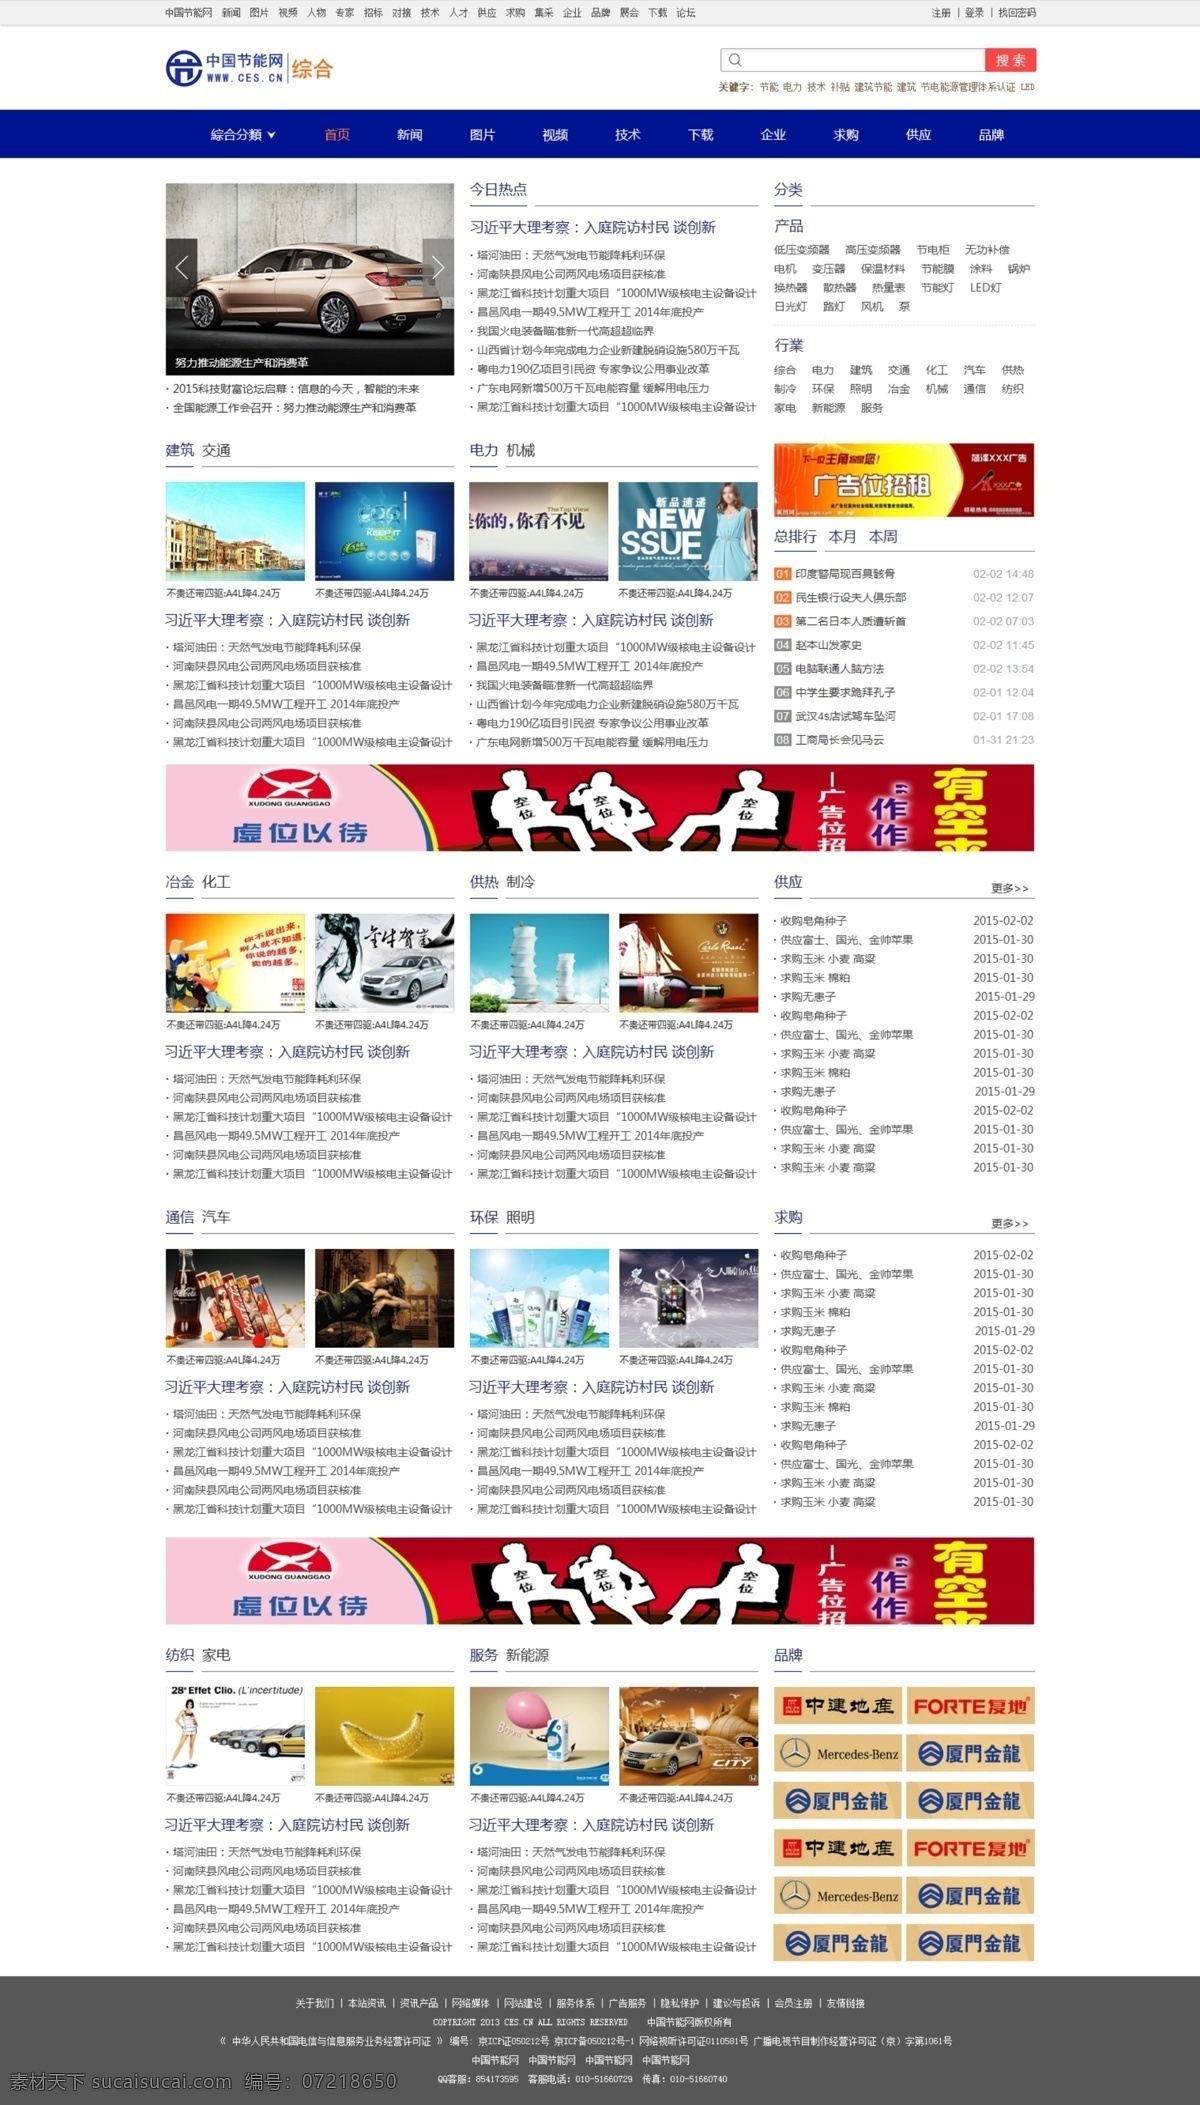 门户网站 门户 网站 网站页面 效果图 中文模板 web页面 前端 web 界面设计 网页素材 其他网页素材